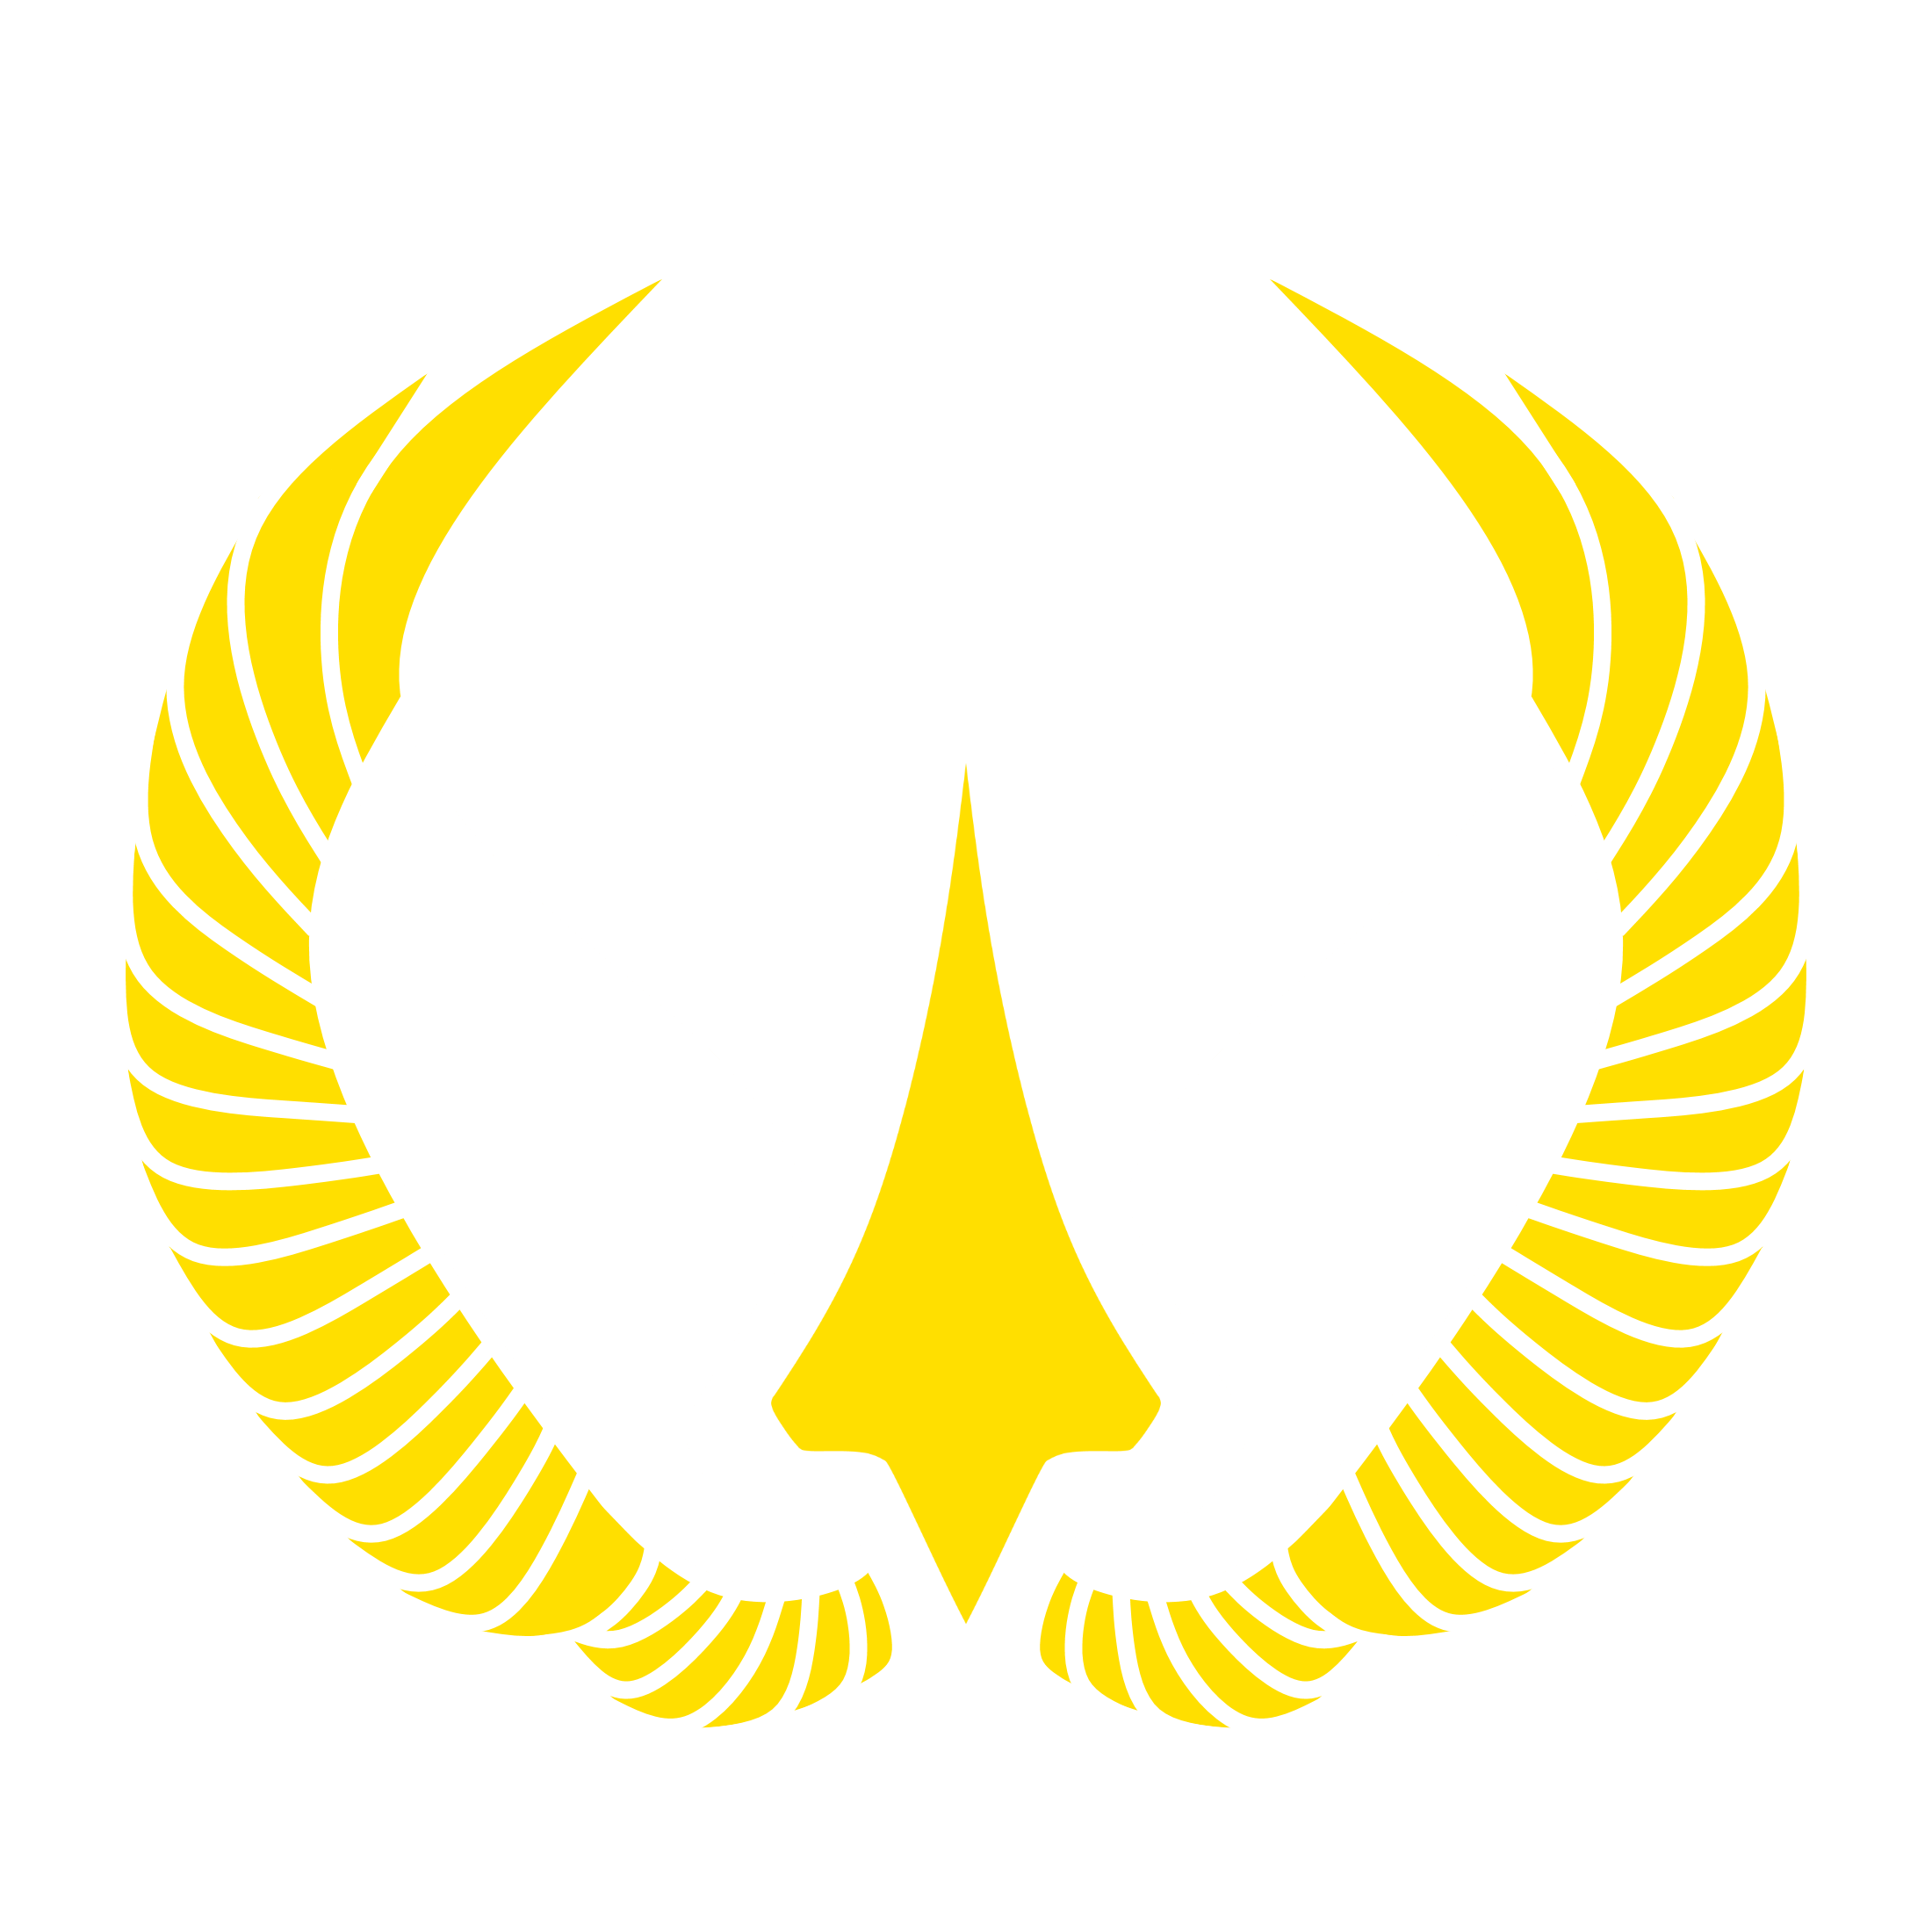 United Nations Aerospace Coalition Emblem